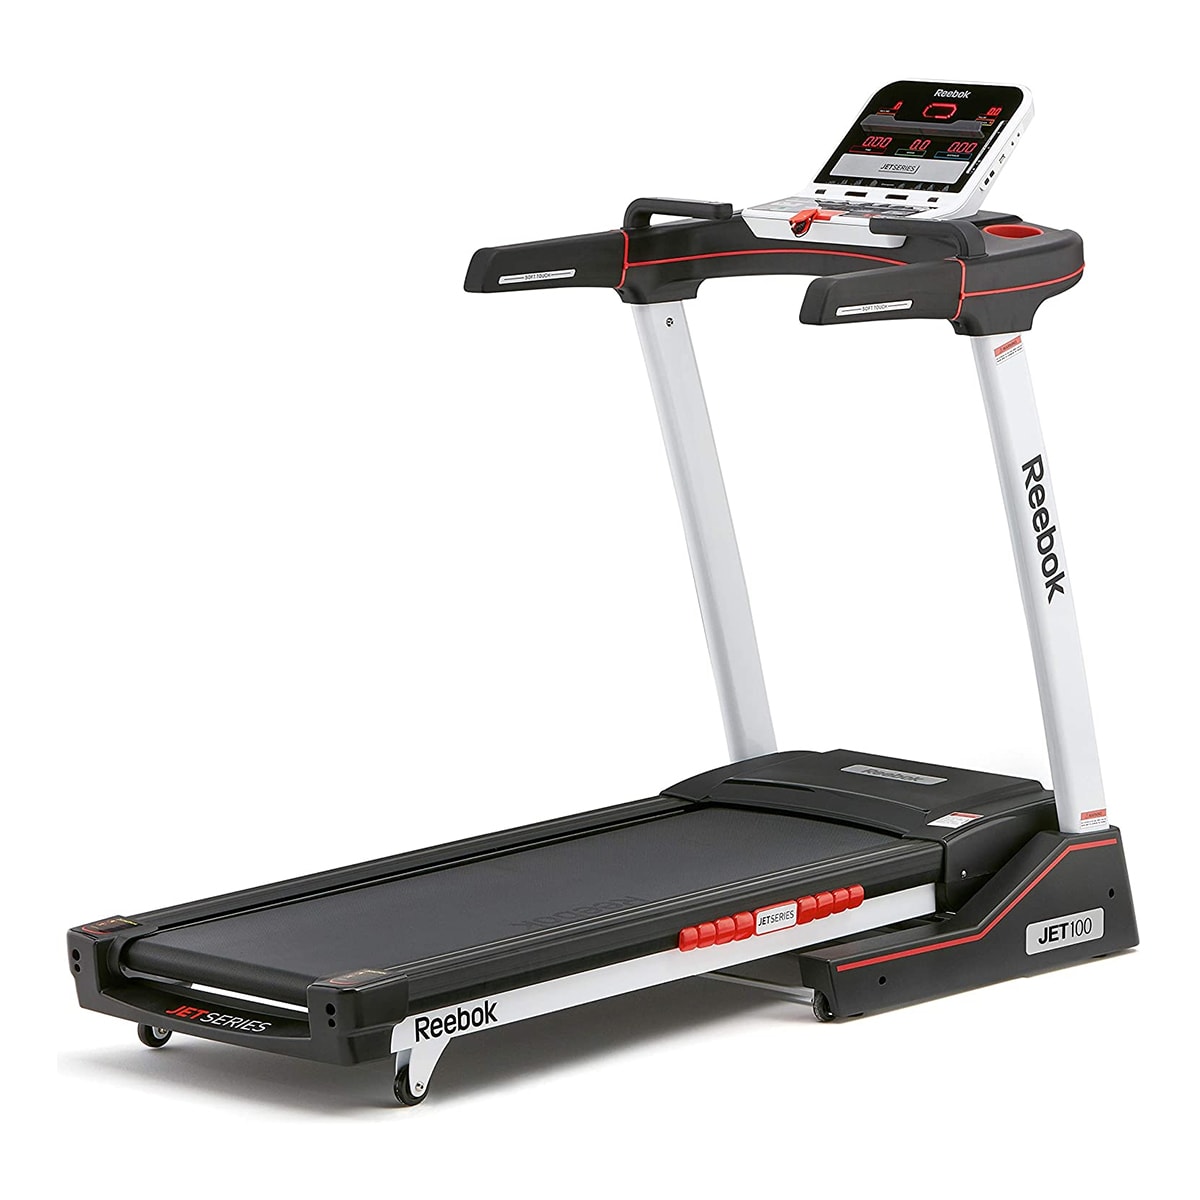 Reebok Fitness Jet 100 Series Treadmill + Bluetooth